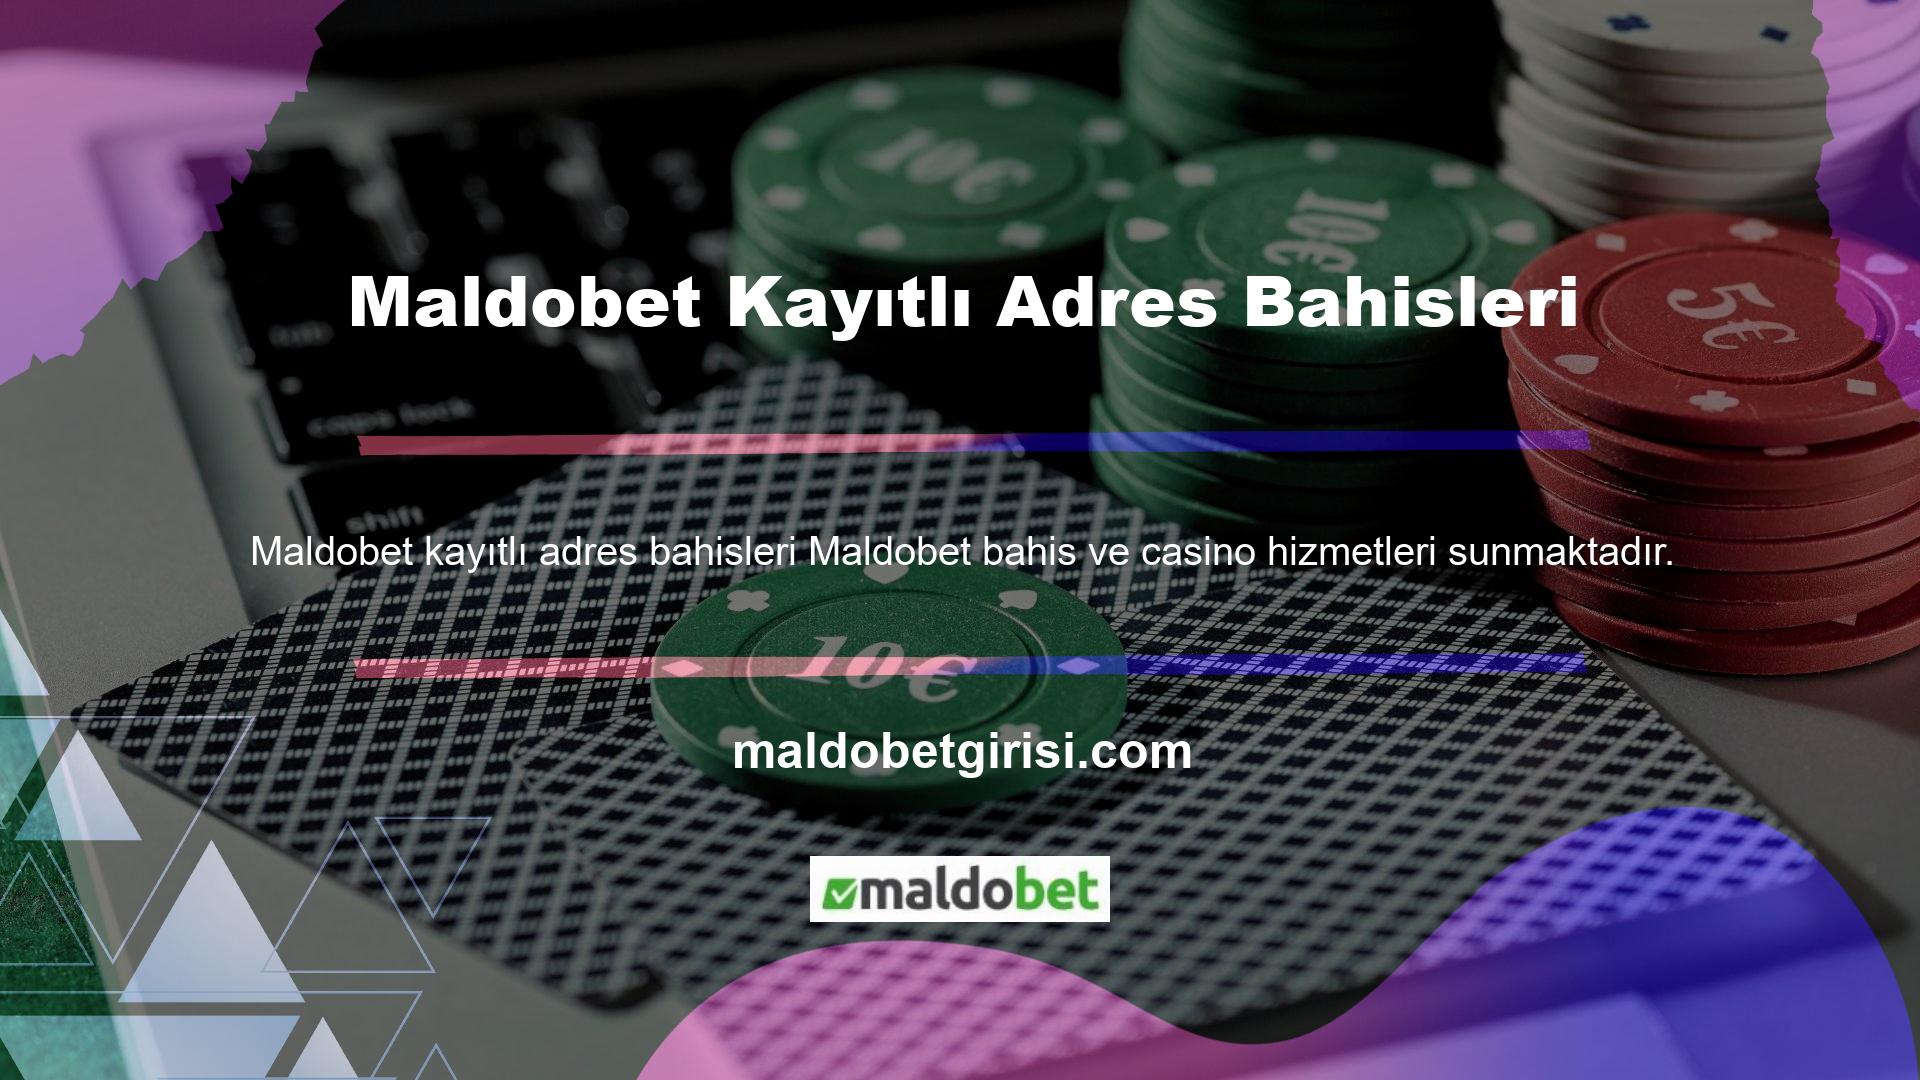 Maldobet Casino’nun lobisi, tanınmış ve popüler casino oyunlarının yanı sıra benzersiz içeriklerle doludur